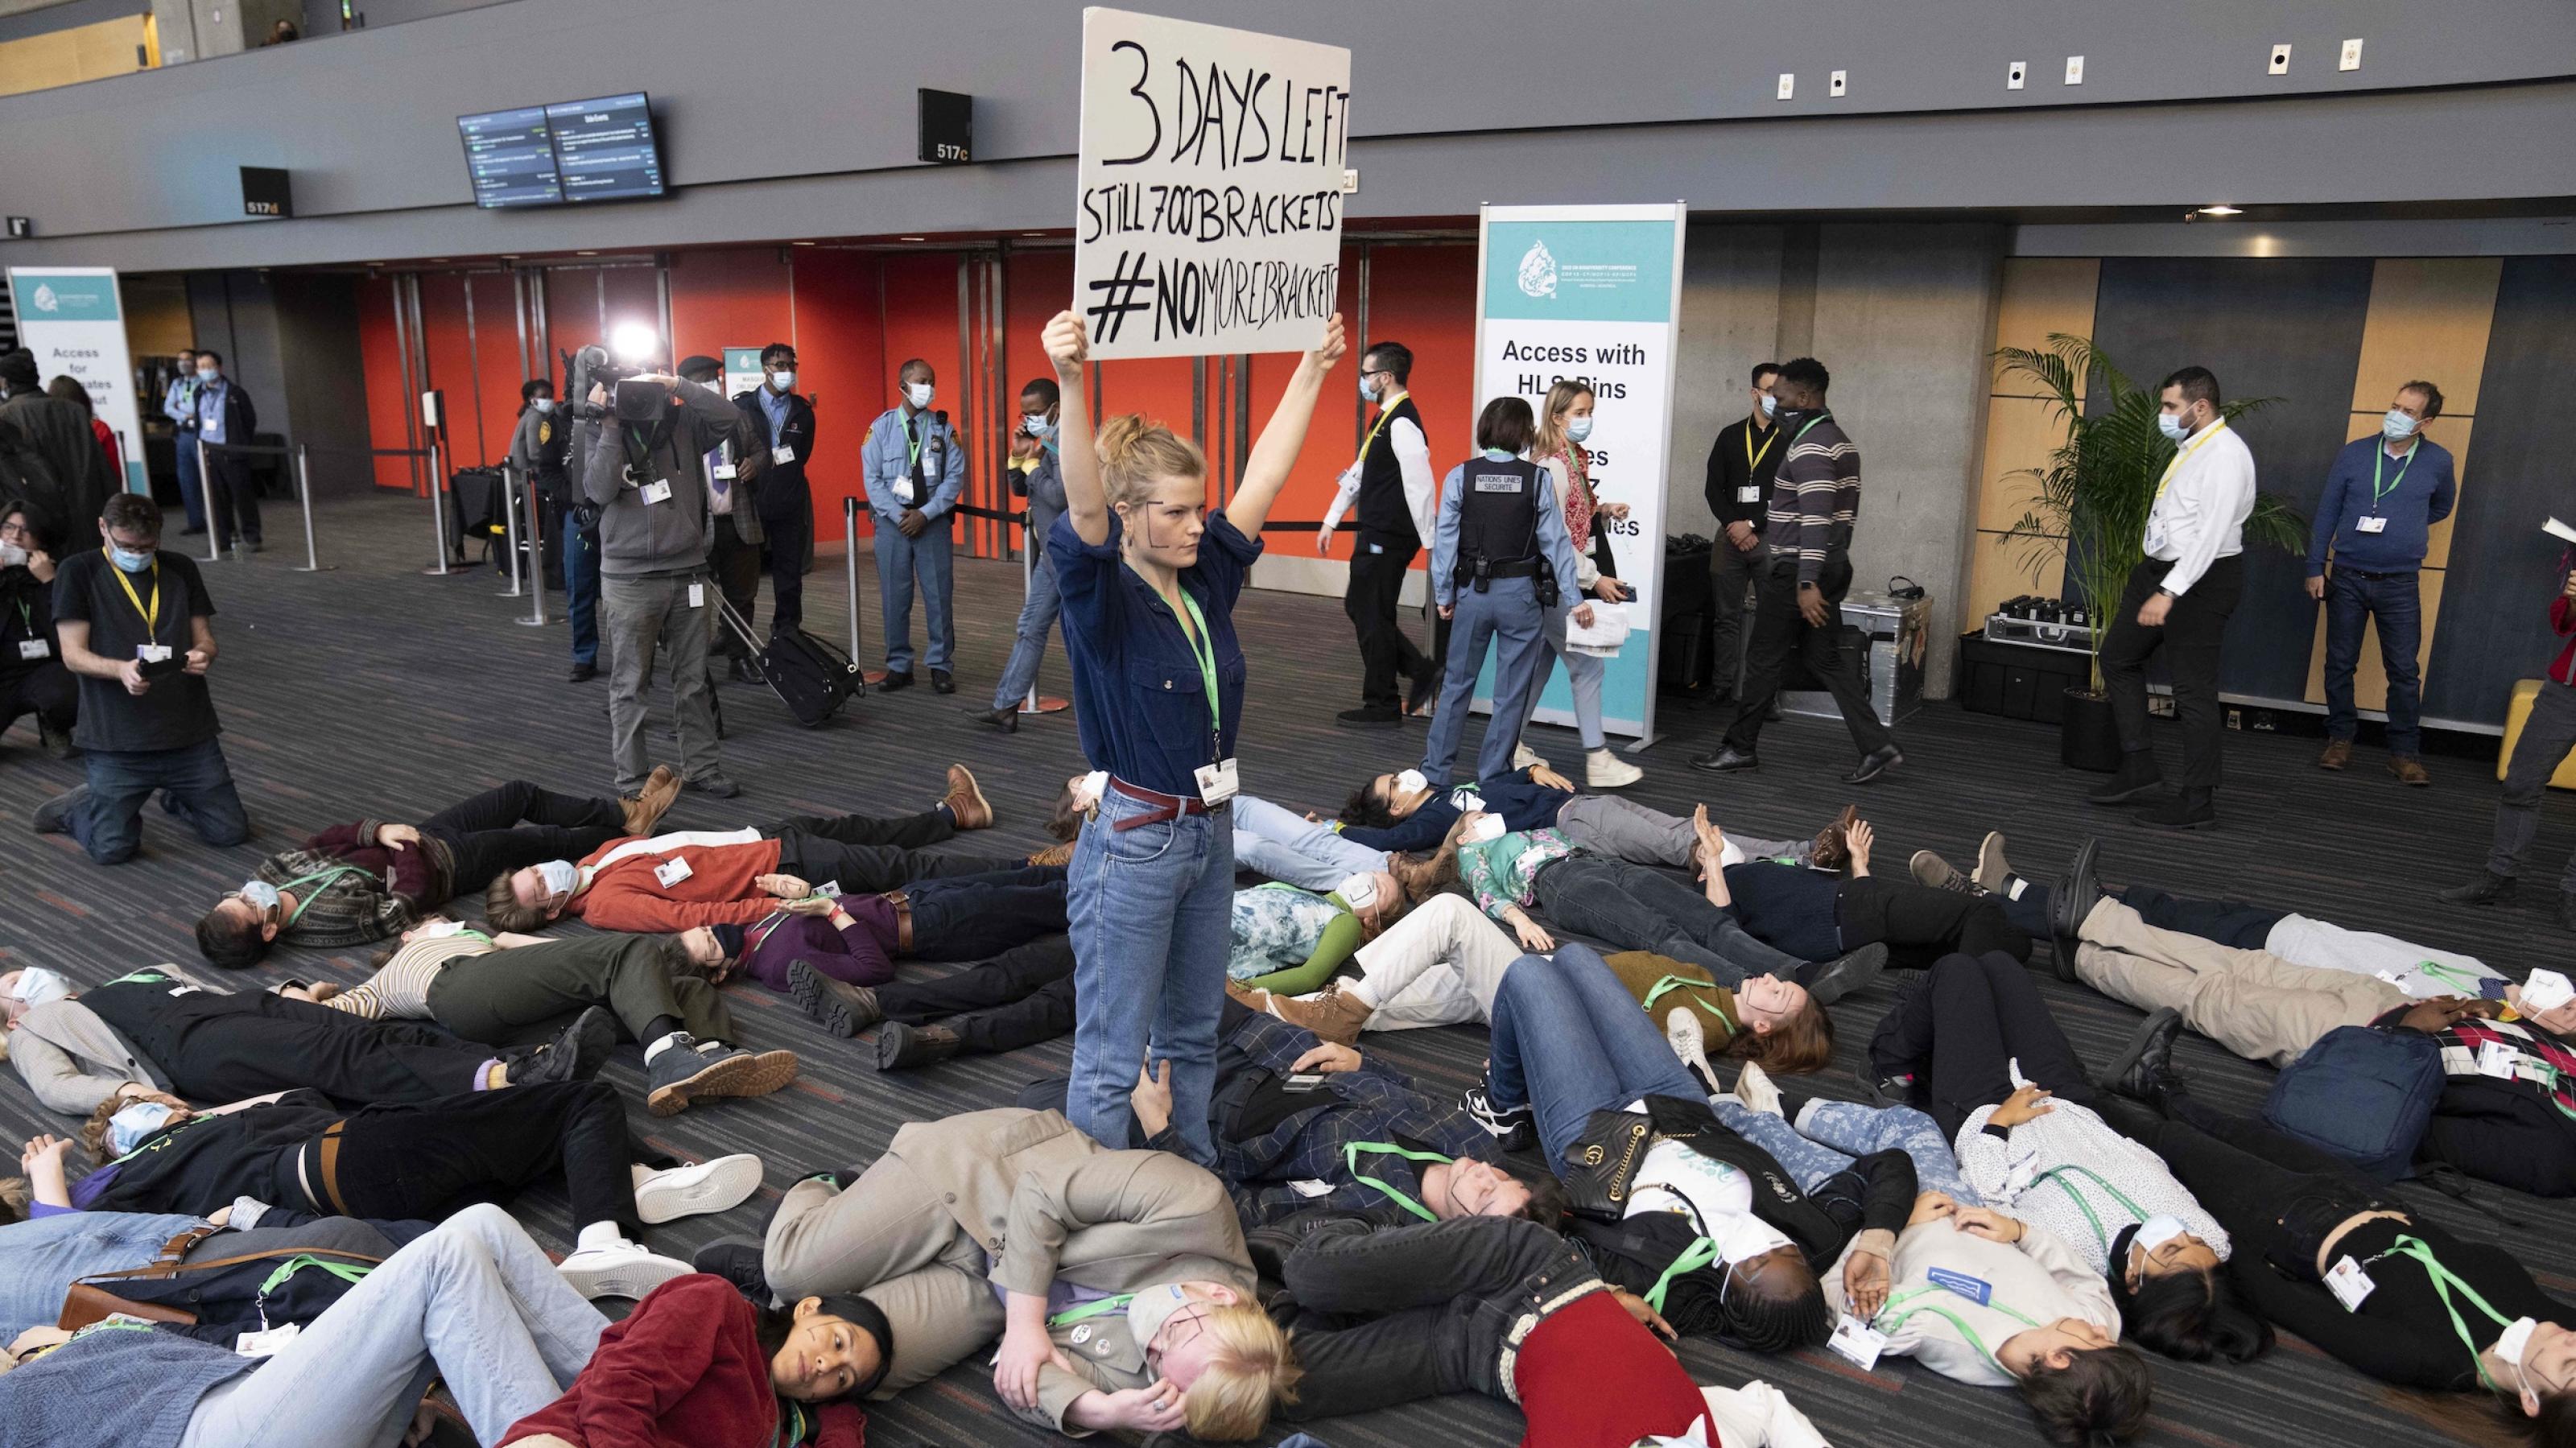 Junge Menschen liegen wie tot auf dem Boden des Konferenzzentrums, in der Mitte hält eine junge Frau ein Plakat hoch, auf dem „Noch 3 Tage“ steht.